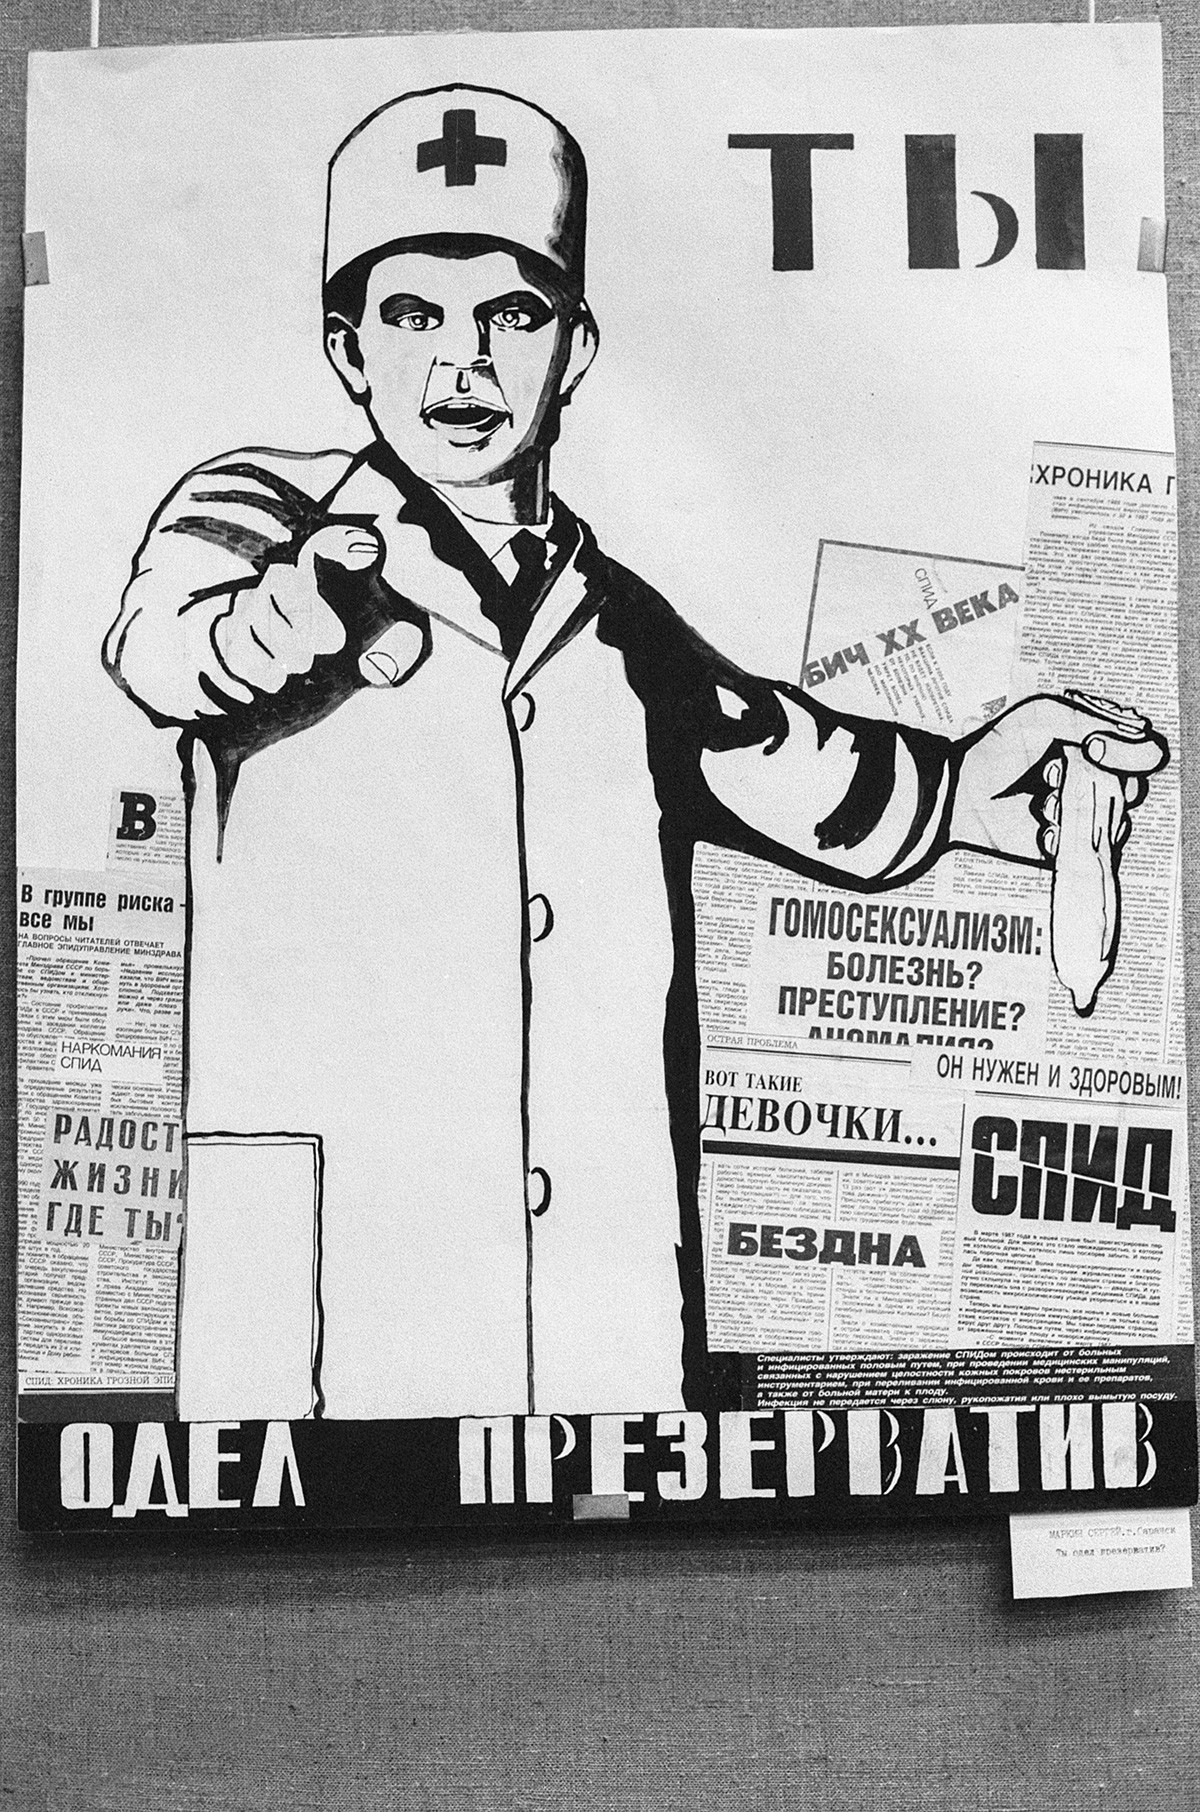 Plakat za spodbujanje uporabe kondomov umetnika S. Markina, Moskva 1991